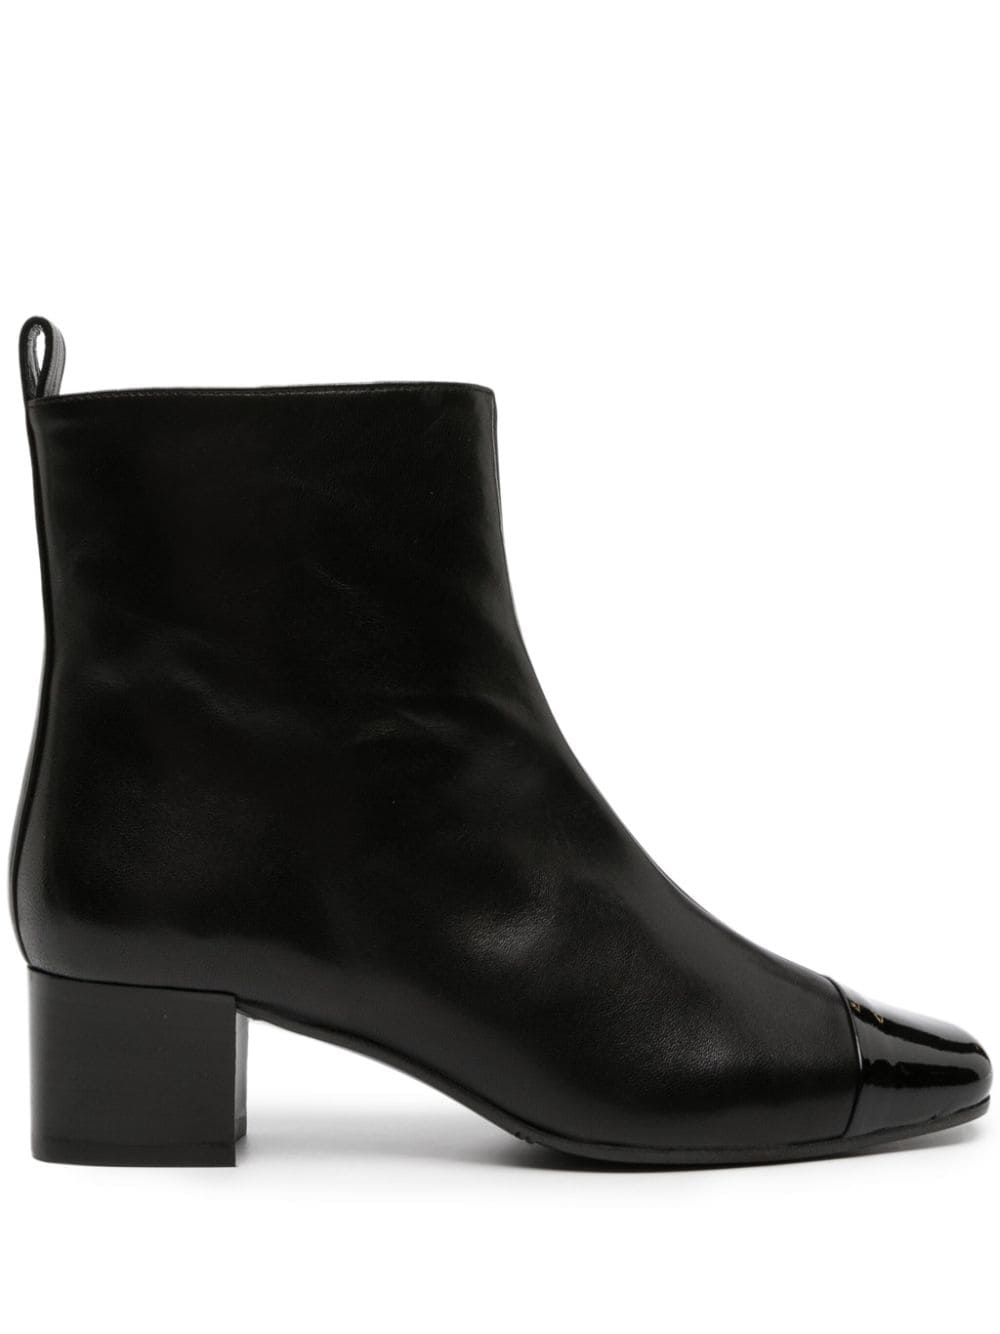 Carel Paris Estime 40mm leather ankle boots - Black von Carel Paris